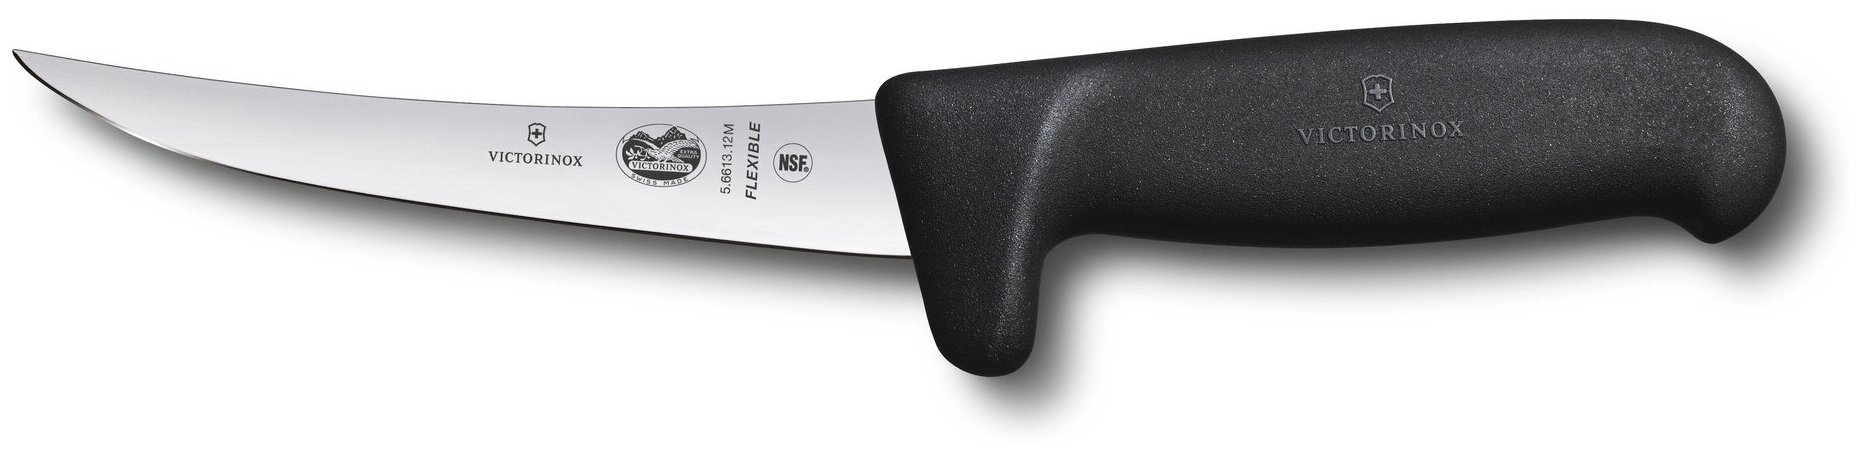 Нож кухонный Victorinox Fibrox, разделочный, 120мм, заточка прямая, стальной, черный [5.6613.12m]